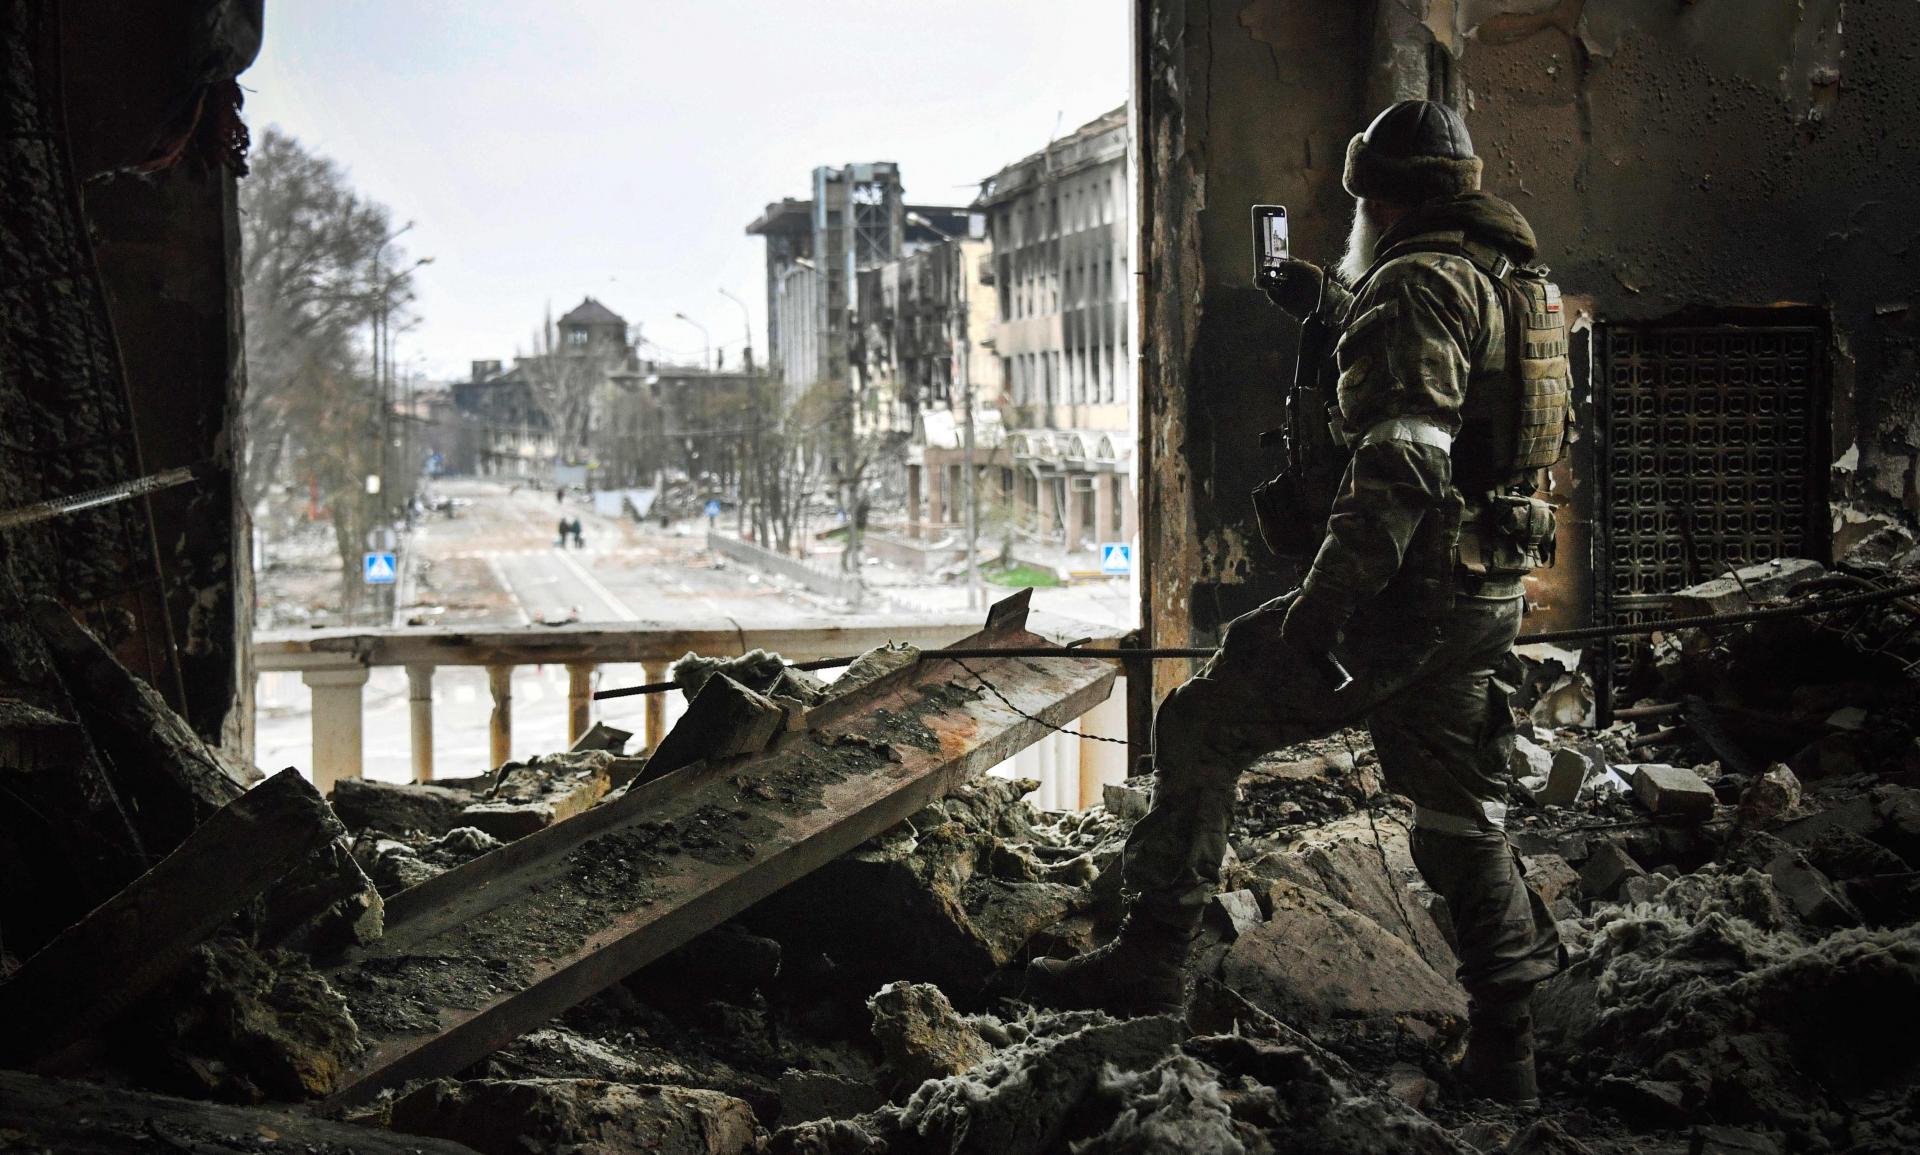 Jutarnji list - Kada i kako će završiti rat u Ukrajini? 10 uglednih vojnih  analičara dalo je svoju prognozu